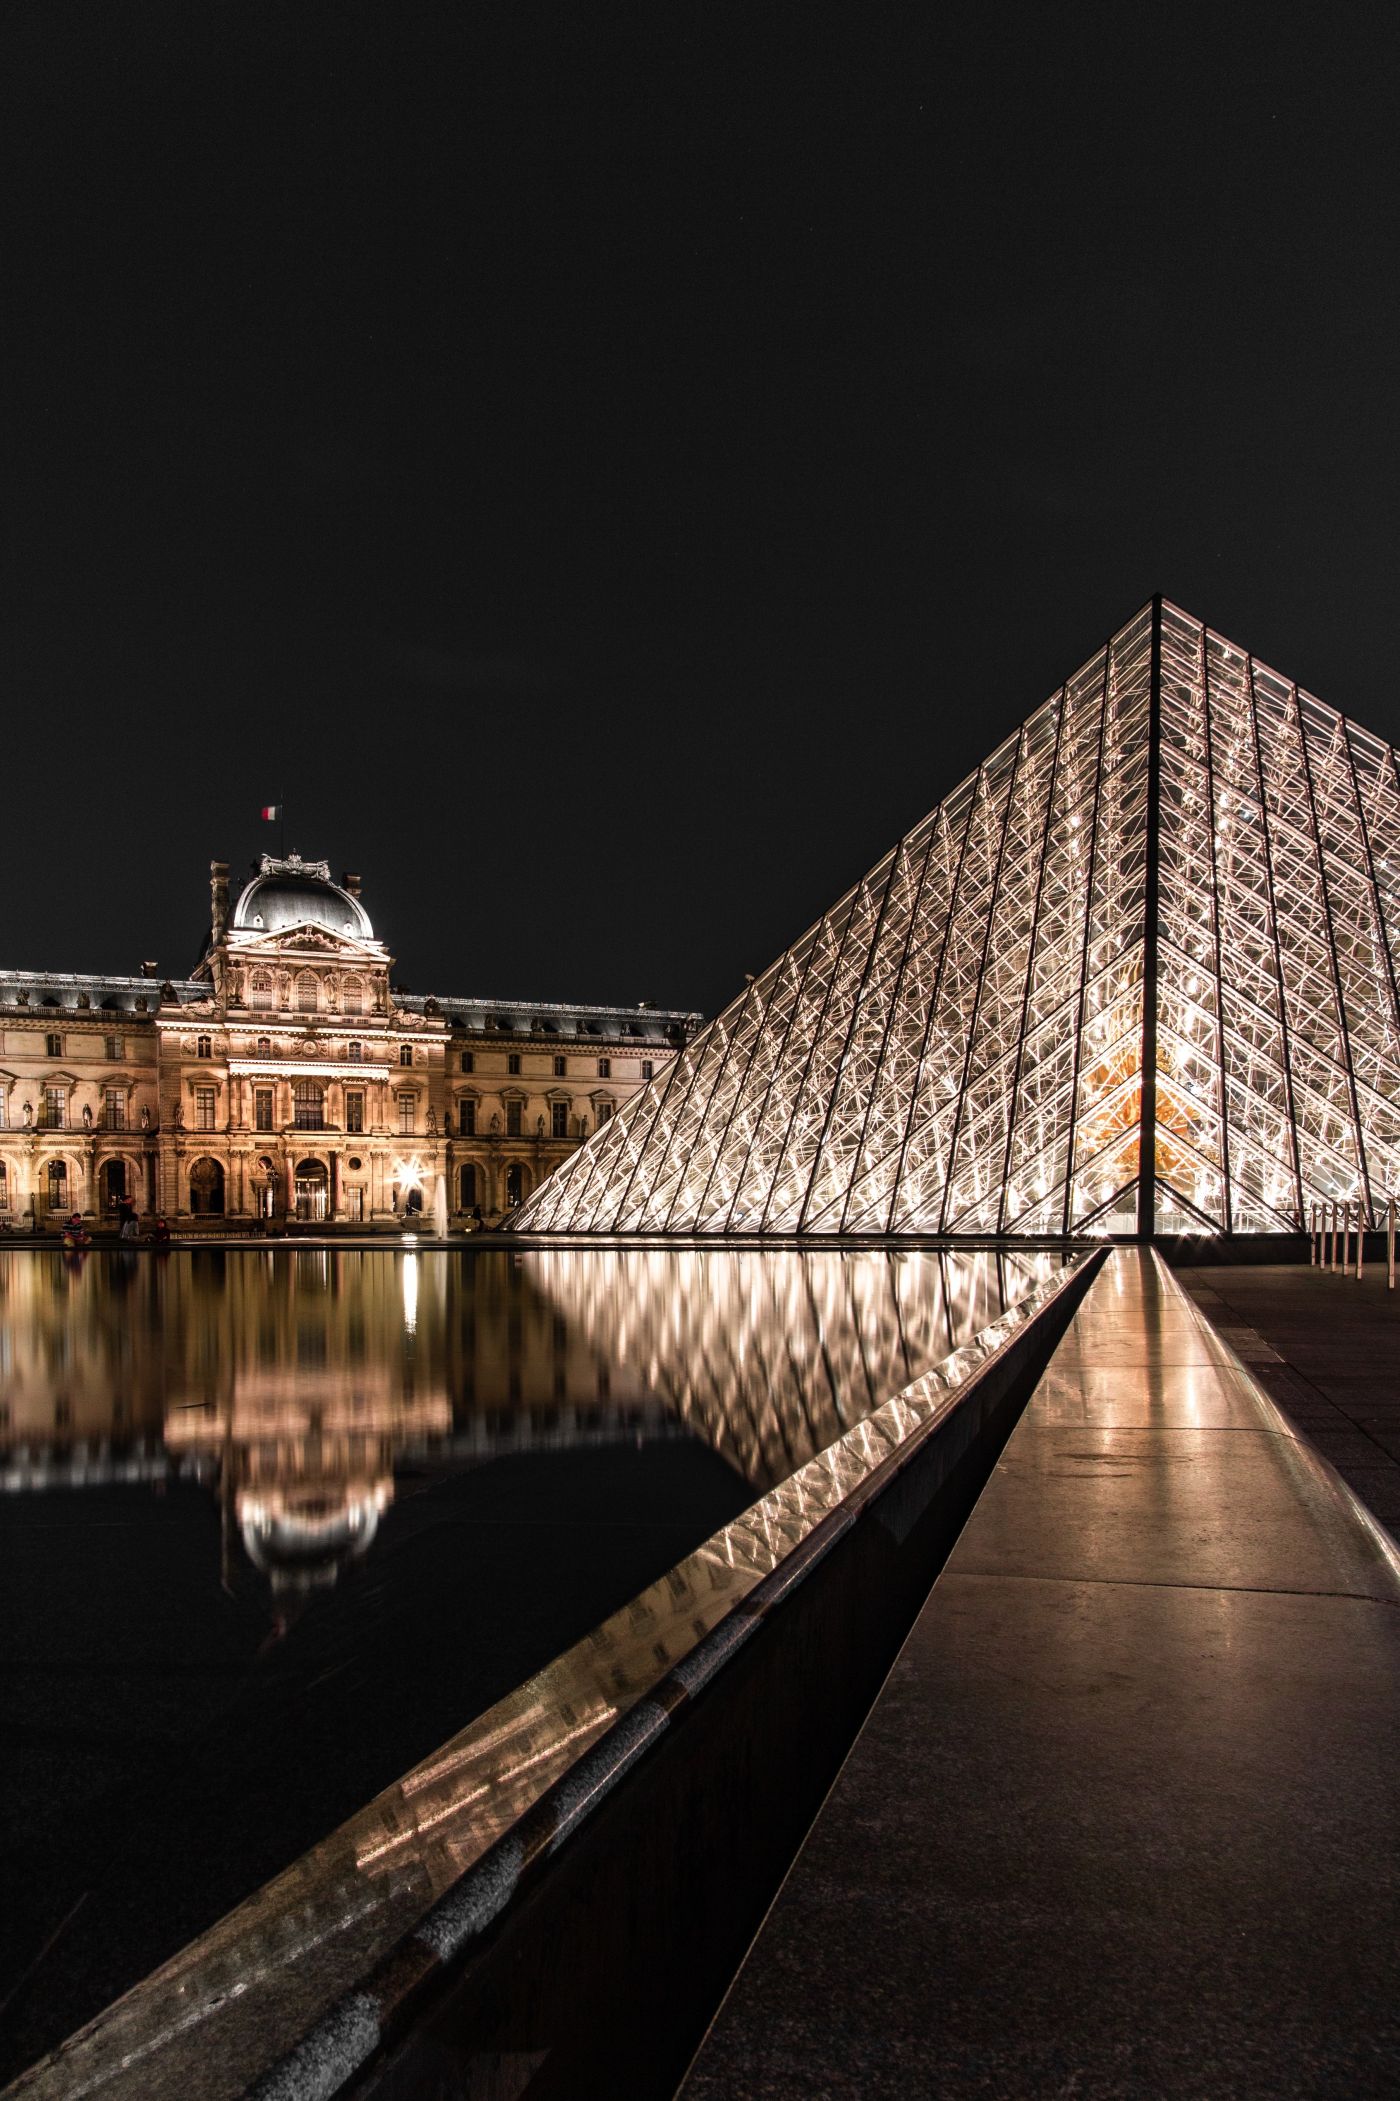 高清晰巴黎卢浮宫-奢华夜景壁纸